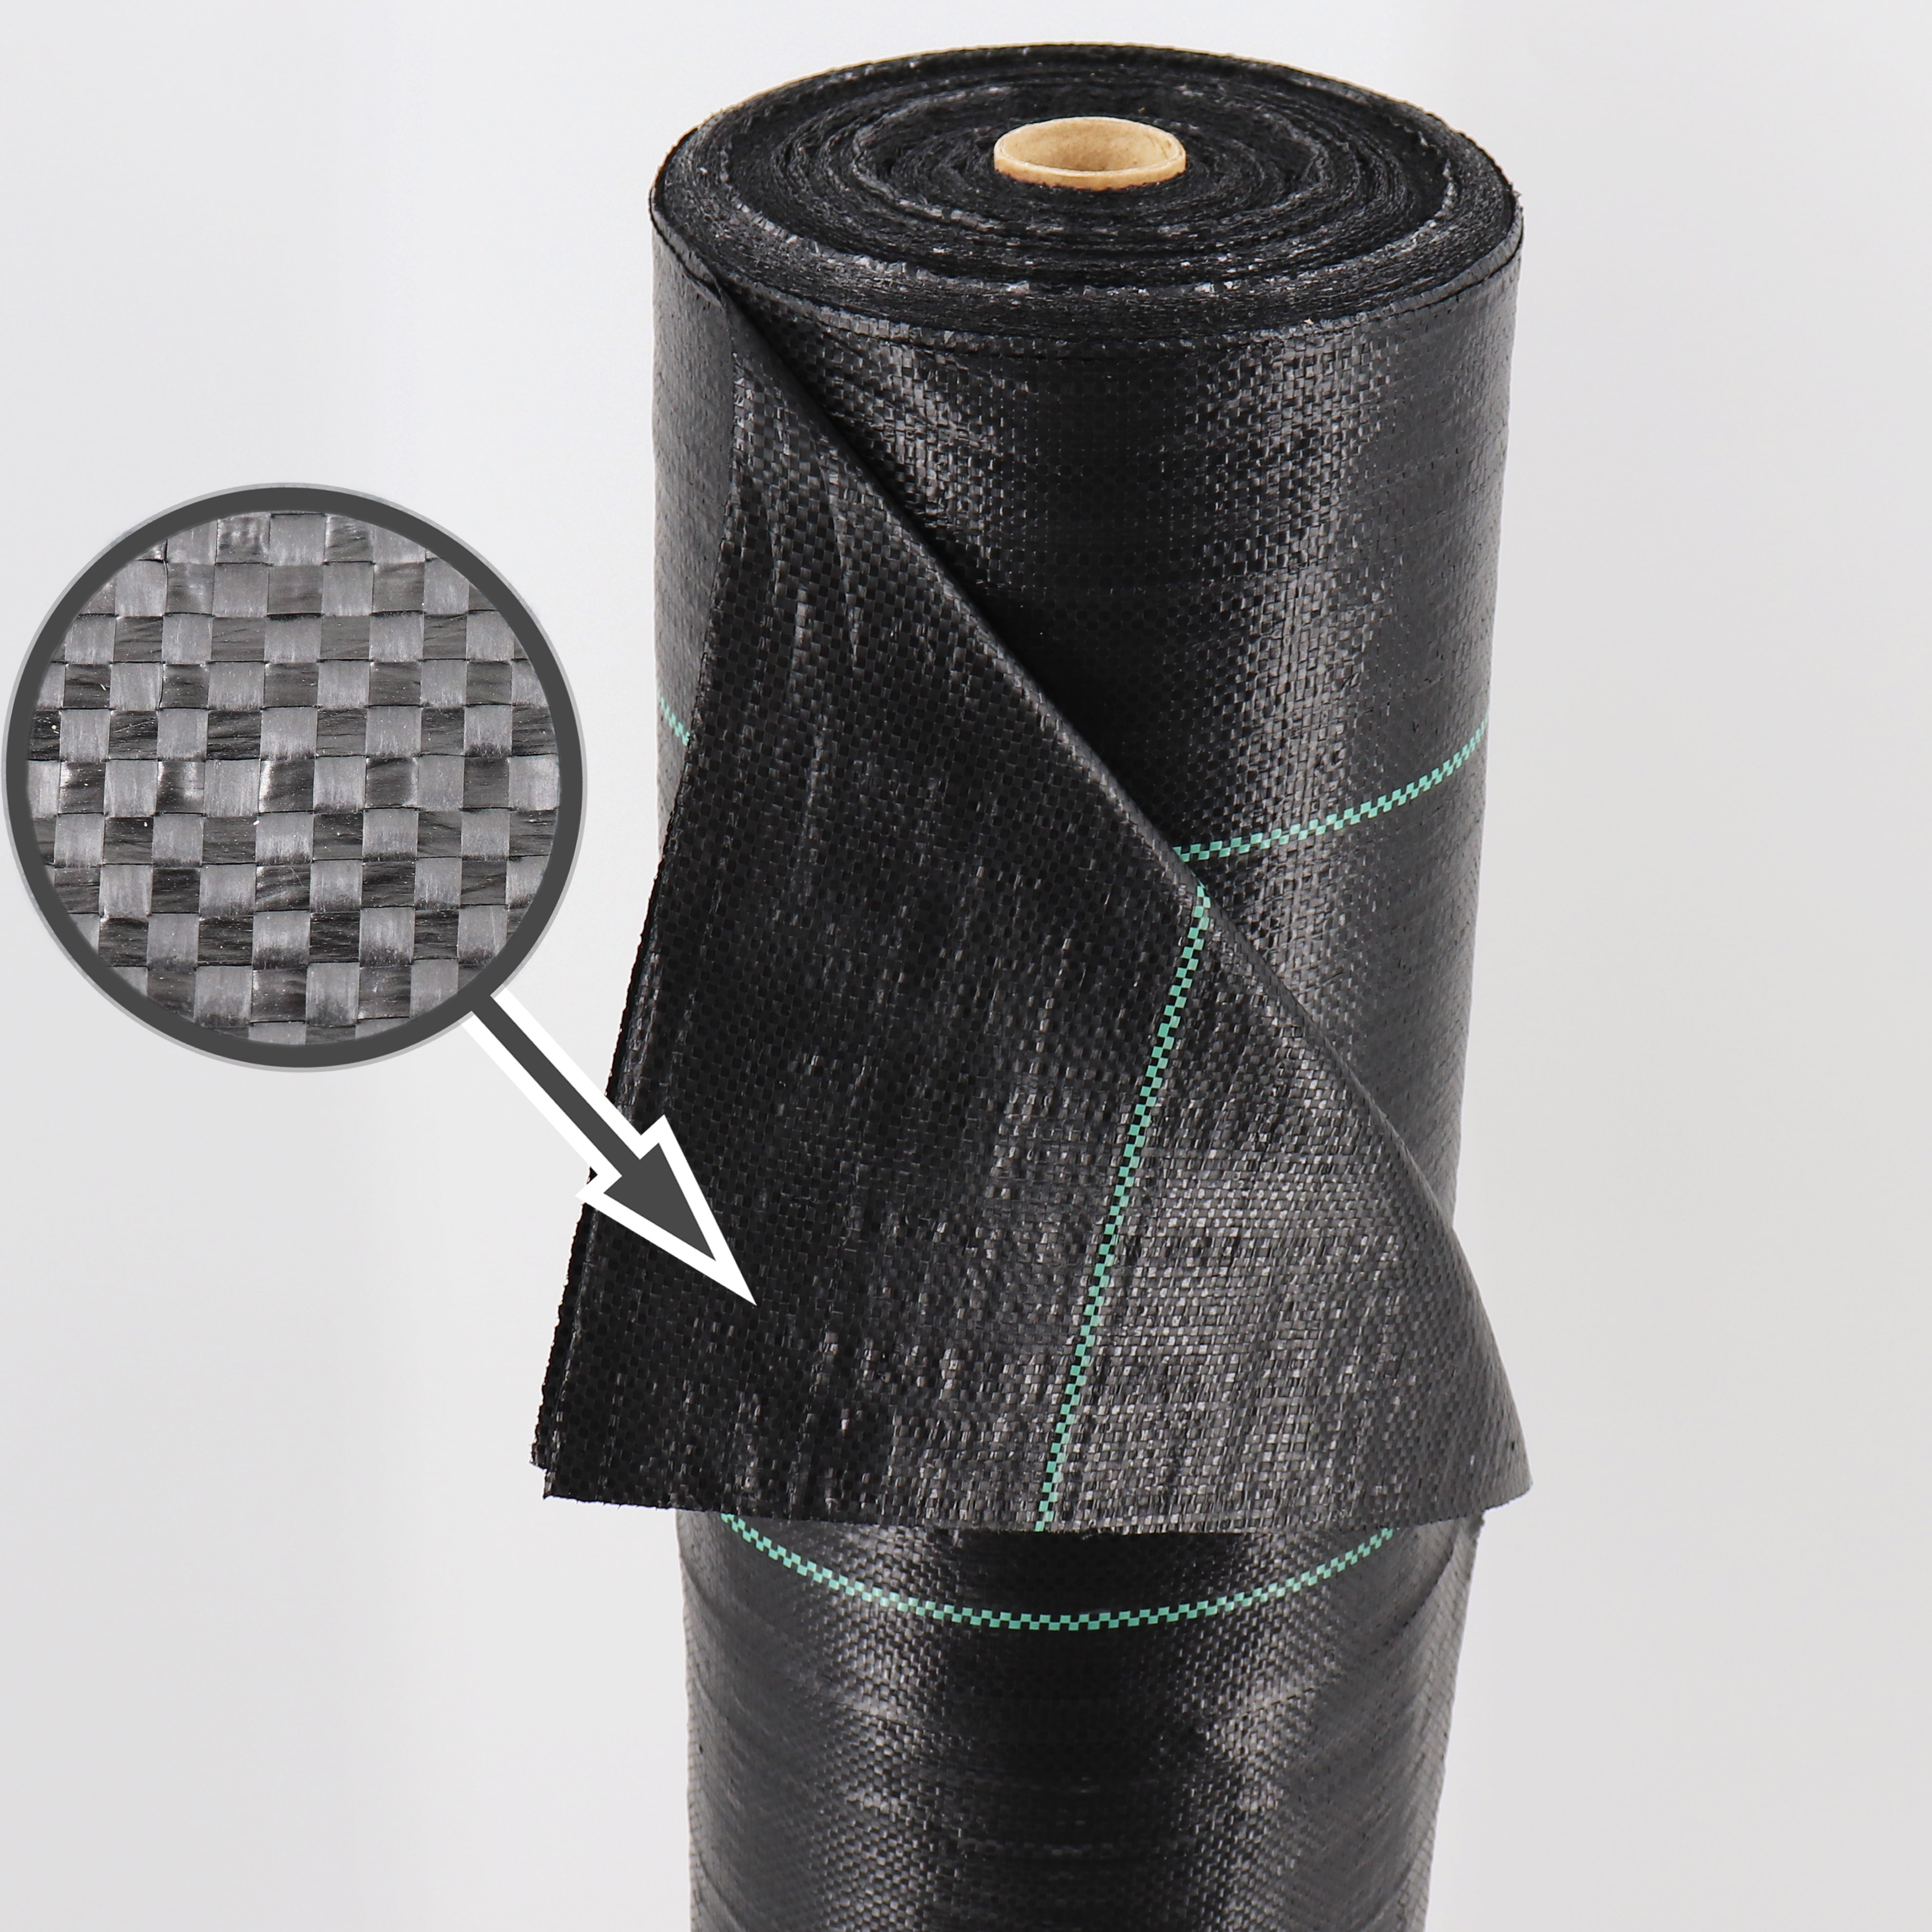 Bâche de recouvrement bâche en tissu bâche de protection bâche de 6 m² à 48m². 